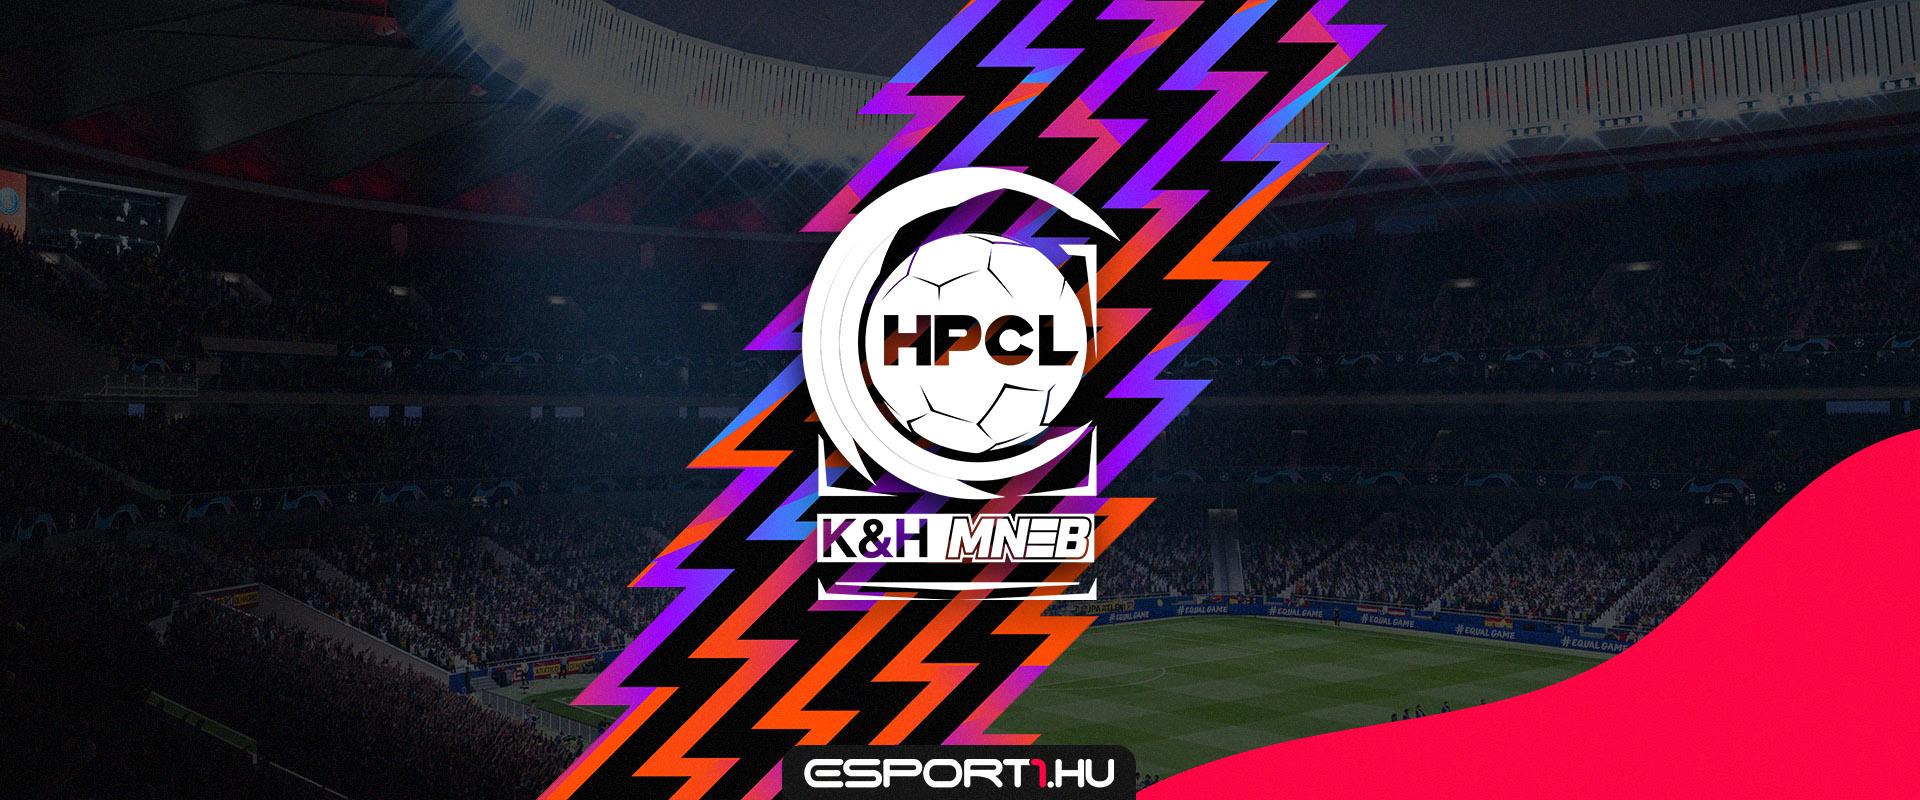 Két rangadót is rendeznek a K&H MNEB HPCL 4. játéknapján